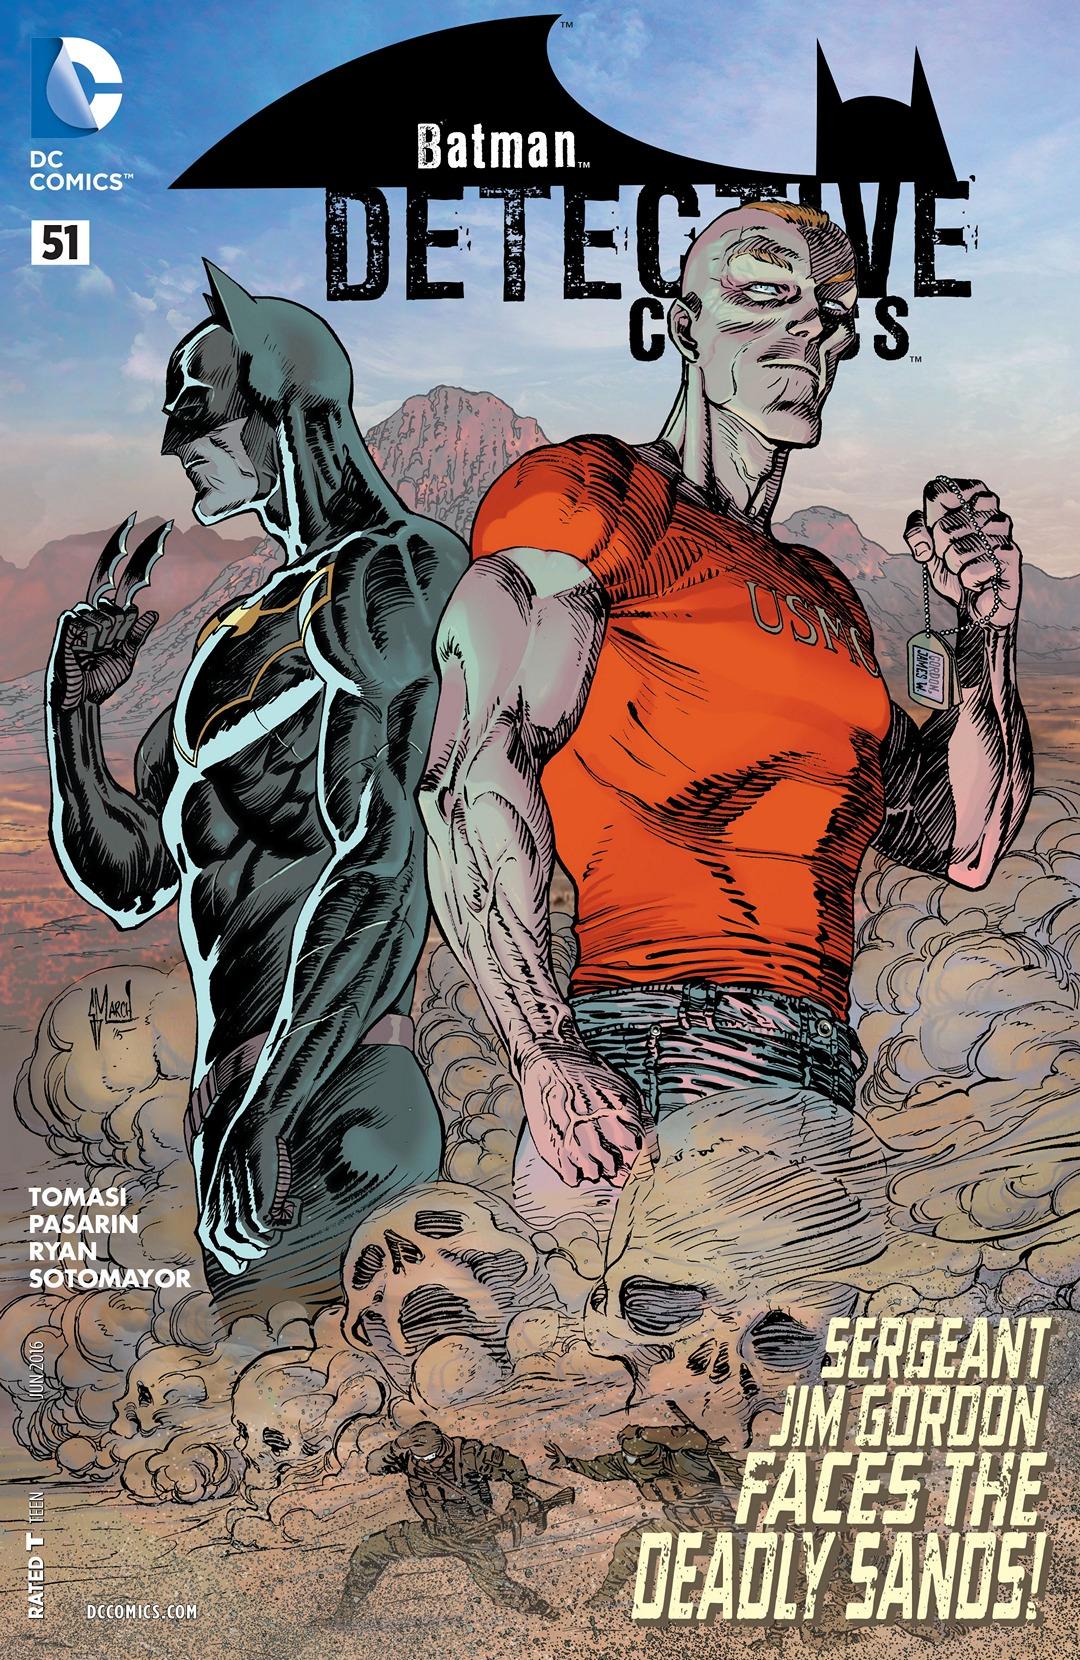 Detective Comics Vol. 2 #51